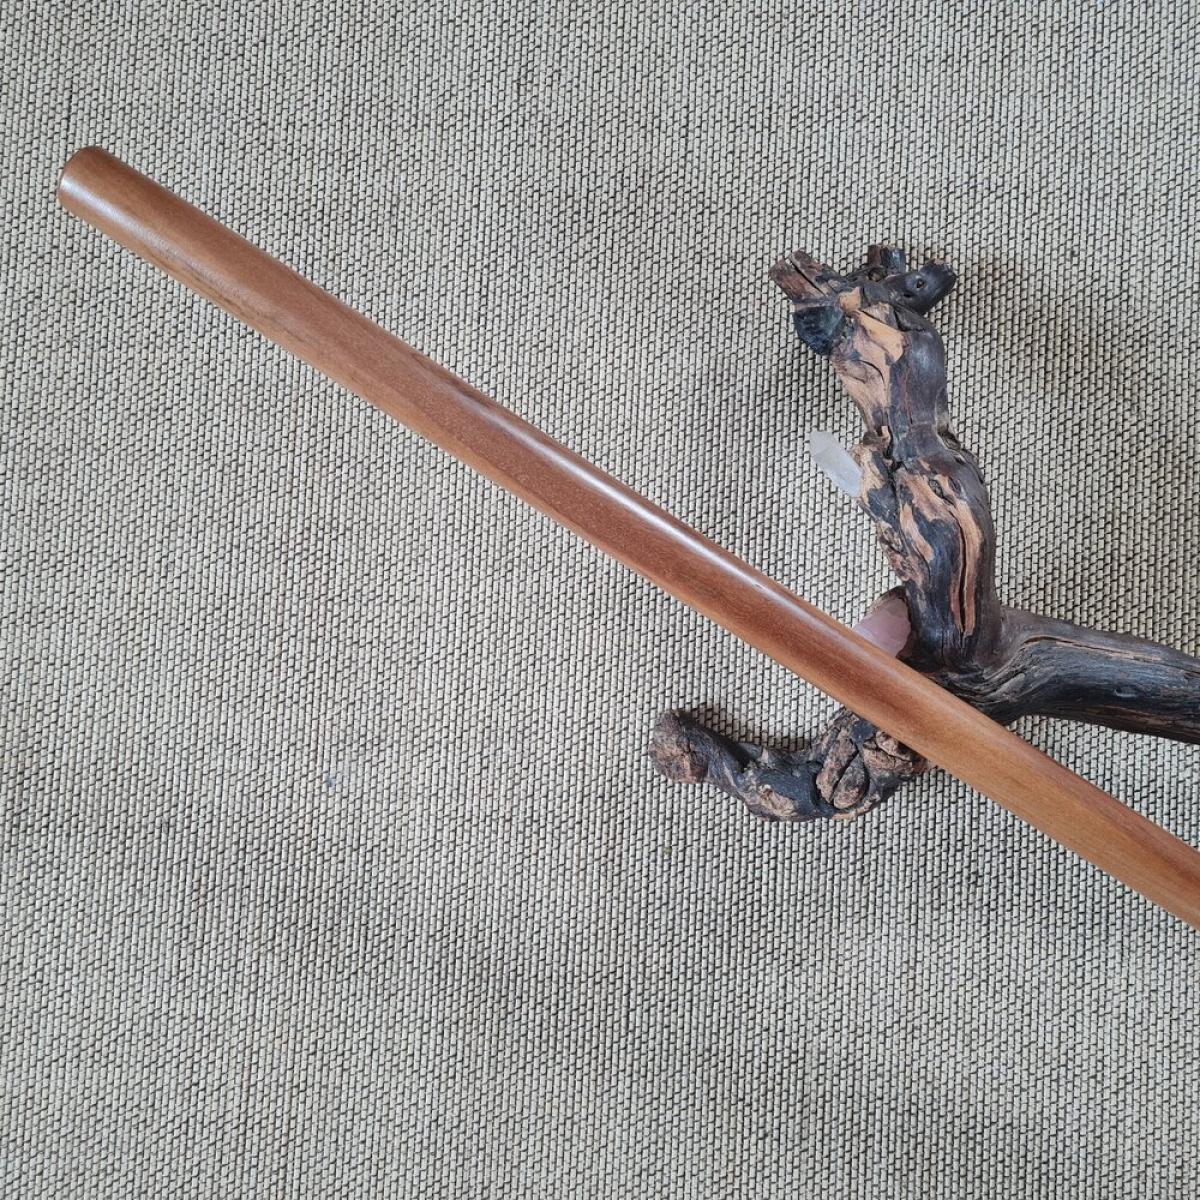 Jo stick made of Supa wood - length 128 cm ➤ www.bokken-shop.de. Suitable for Aikido, Iaido, Jo-Jutsu, Jodo, Bujinkan. Your Budo dealer!